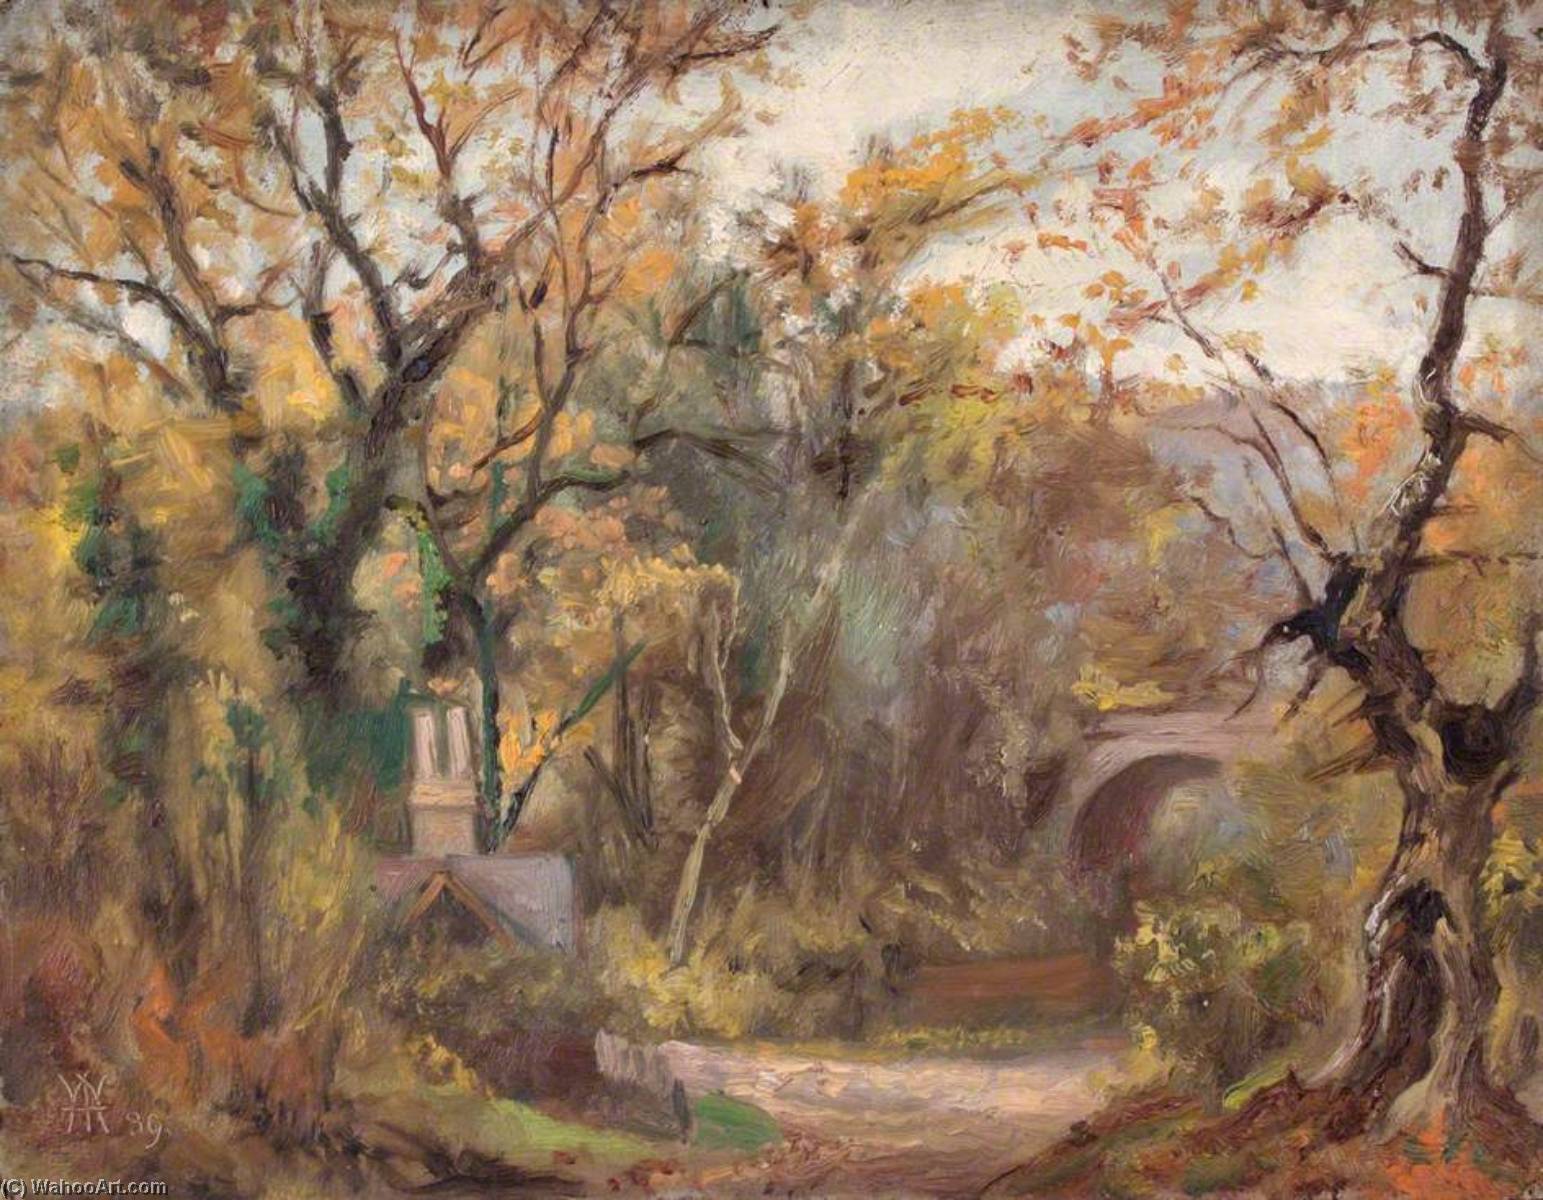 Ordinare Riproduzioni Di Quadri Road to Purley Town, Surrey, 30 ottobre 1889, 1889 di William Henry Hope (1835-1917) | ArtsDot.com